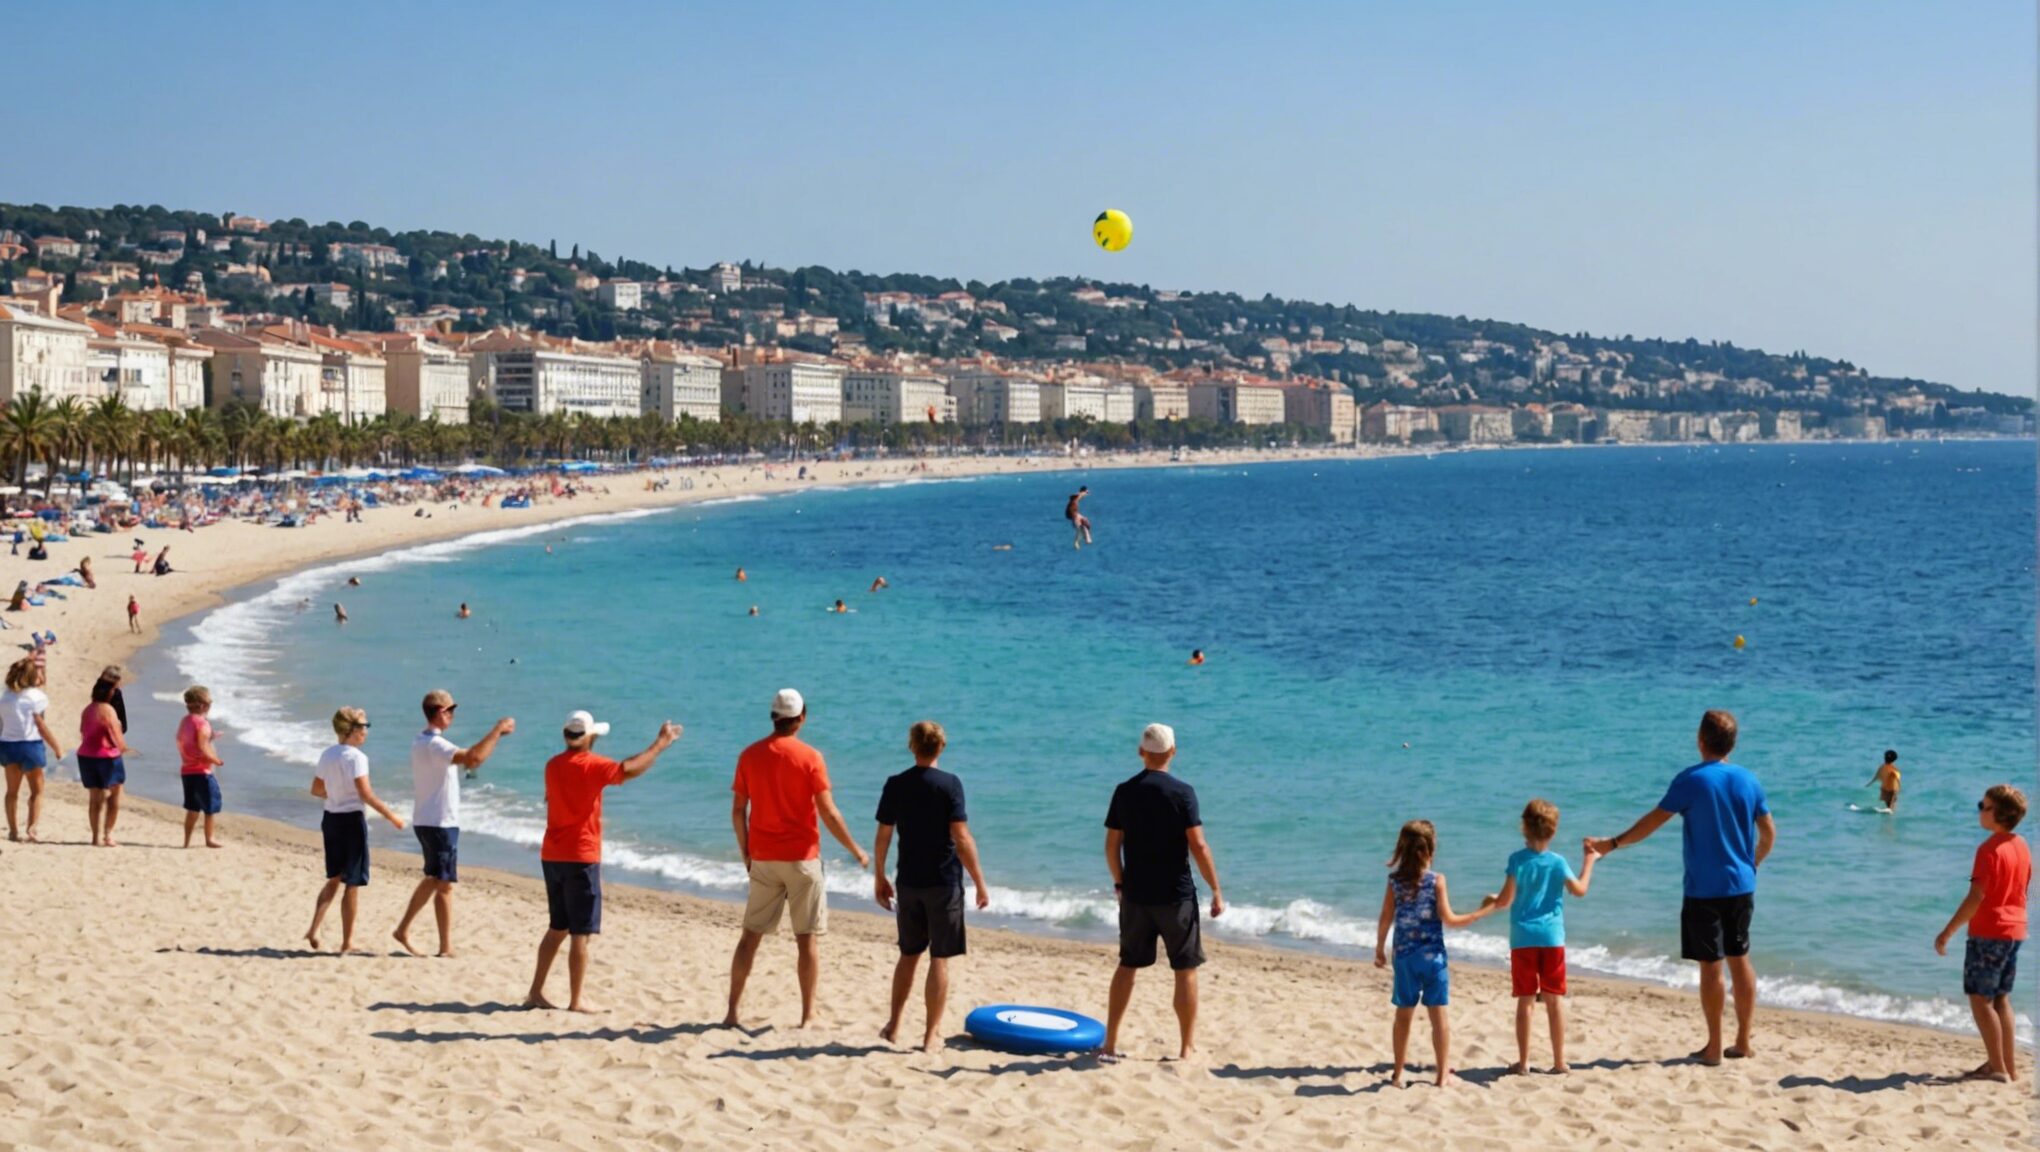 découvrez le top 7 des lieux incontournables pour jouer au frisbee et se détendre en famille sur les magnifiques plages de nice ! activités ludiques et moments de détente assurés.